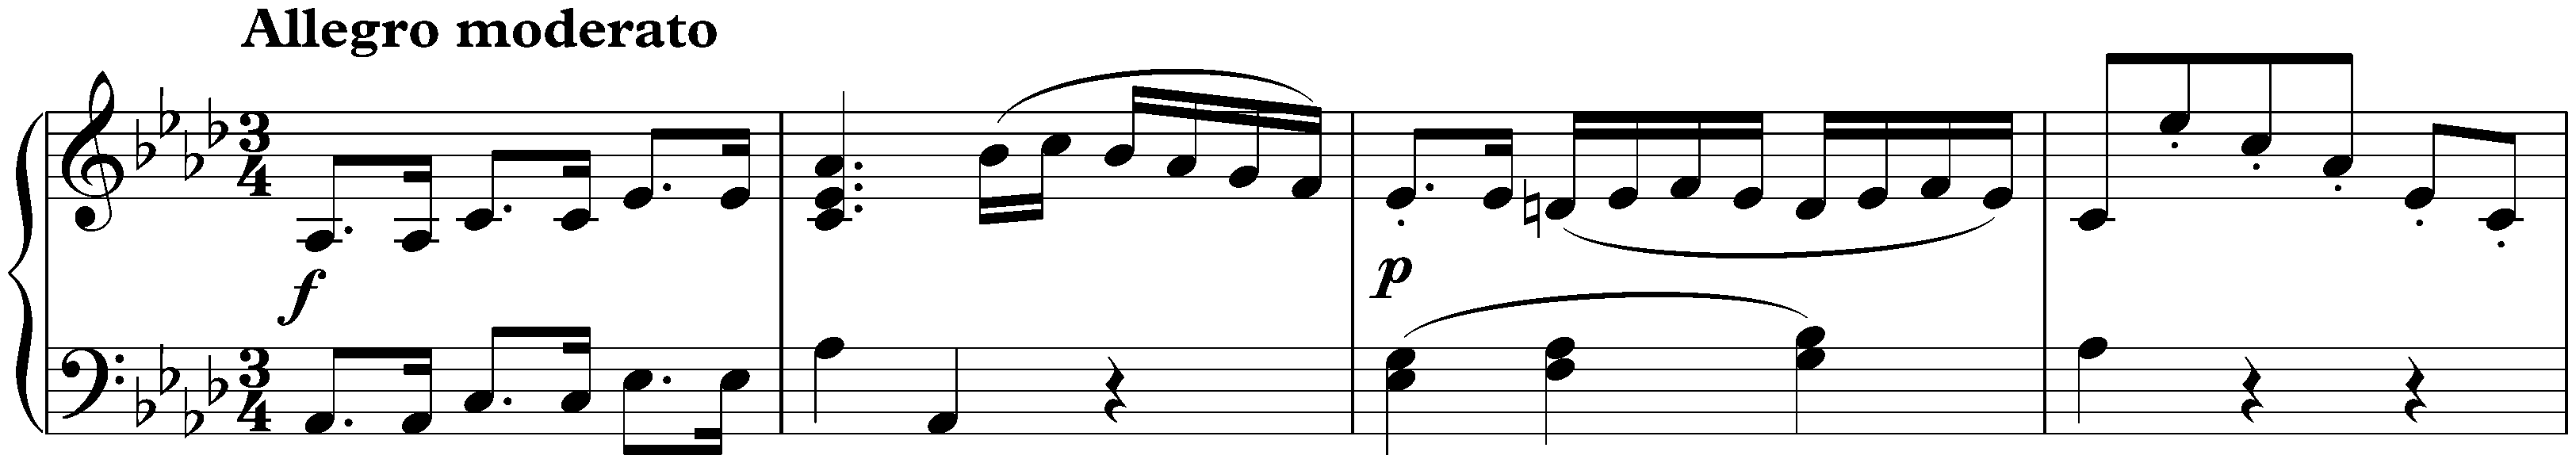 Sonata in A-flat major, D 557; 1. Allegro moderato